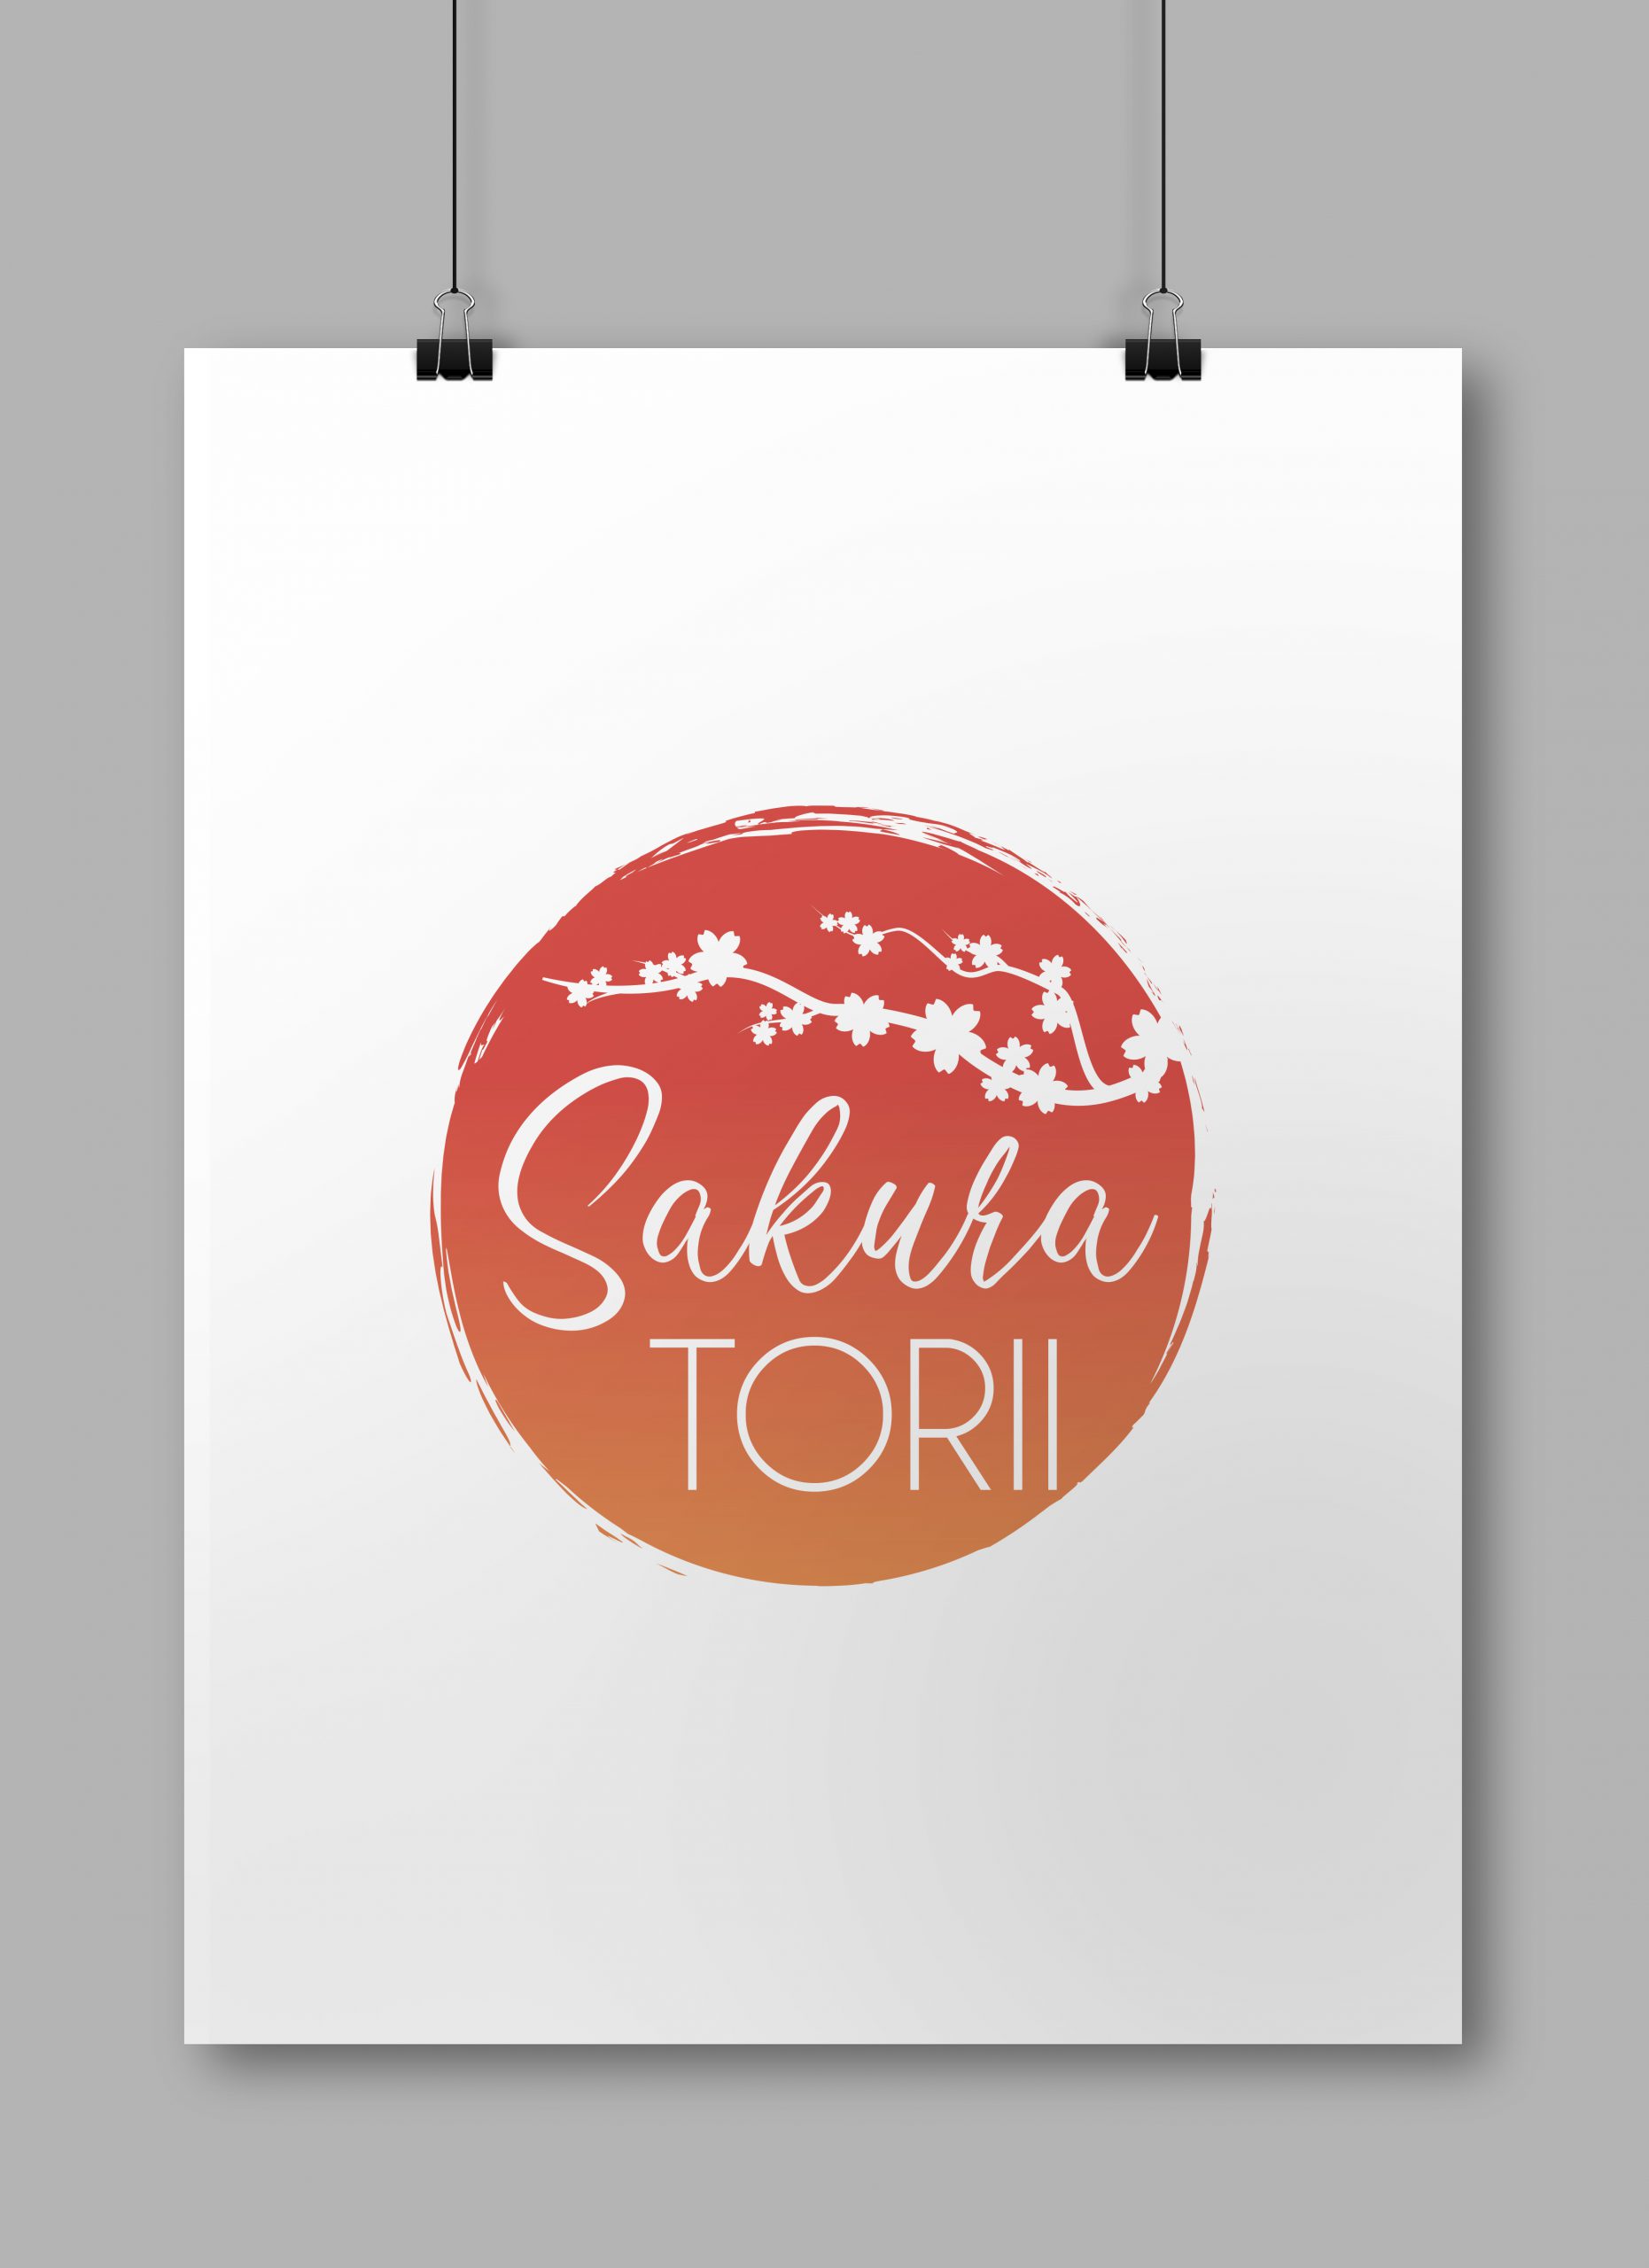 Proposition de logo pour Sakura Torii